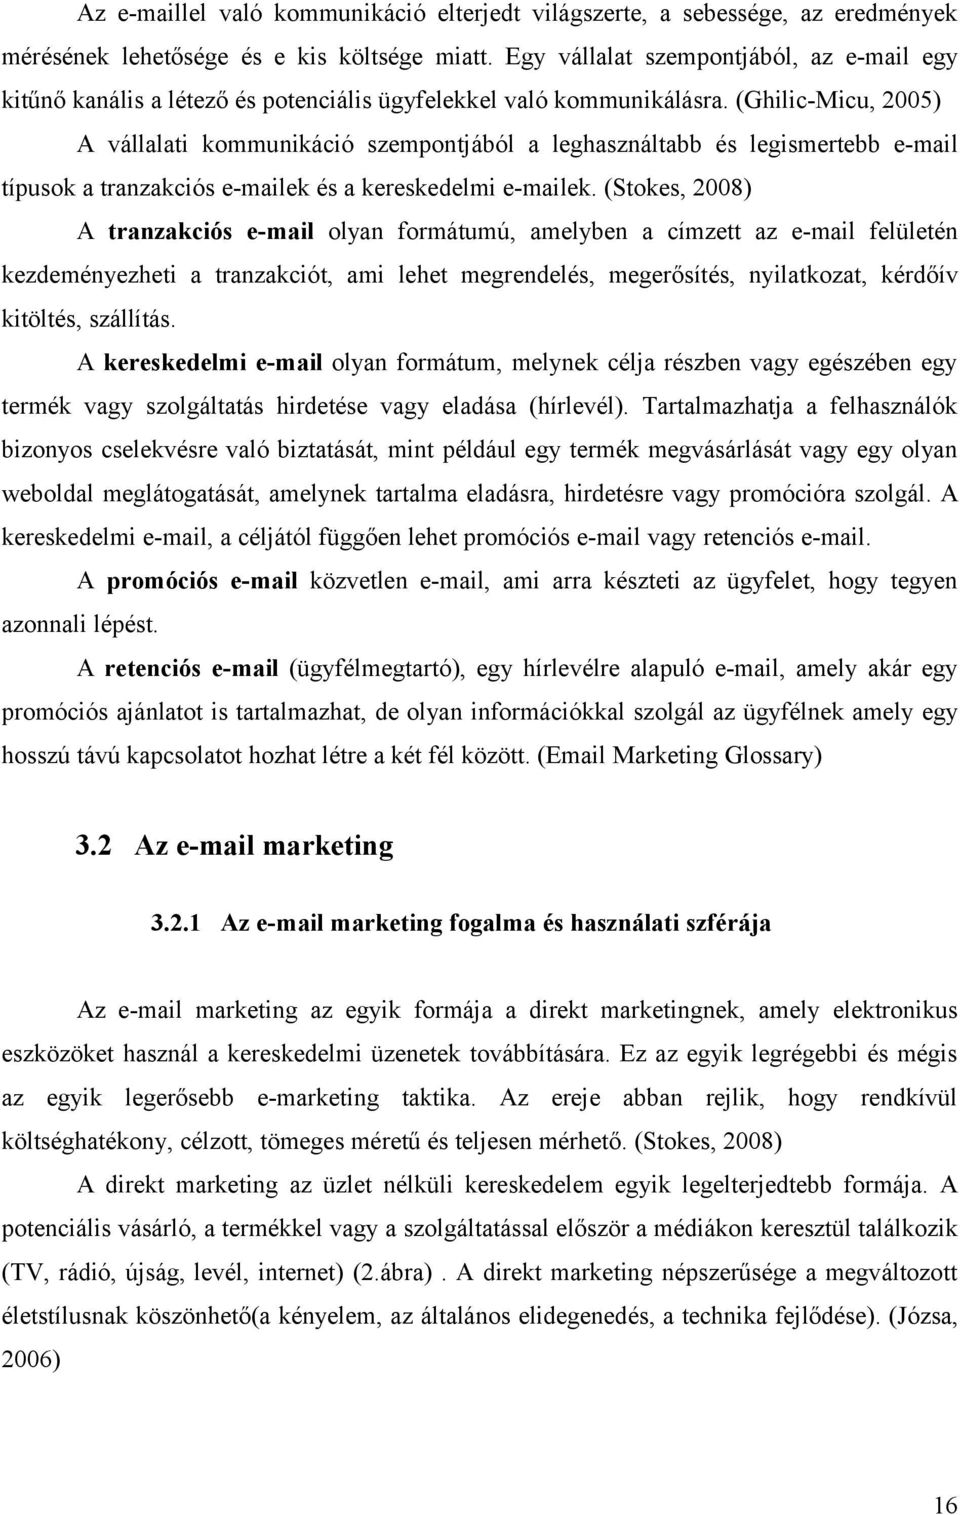 (Ghilic-Micu, 2005) A vállalati kommunikáció szempontjából a leghasználtabb és legismertebb e-mail típusok a tranzakciós e-mailek és a kereskedelmi e-mailek.